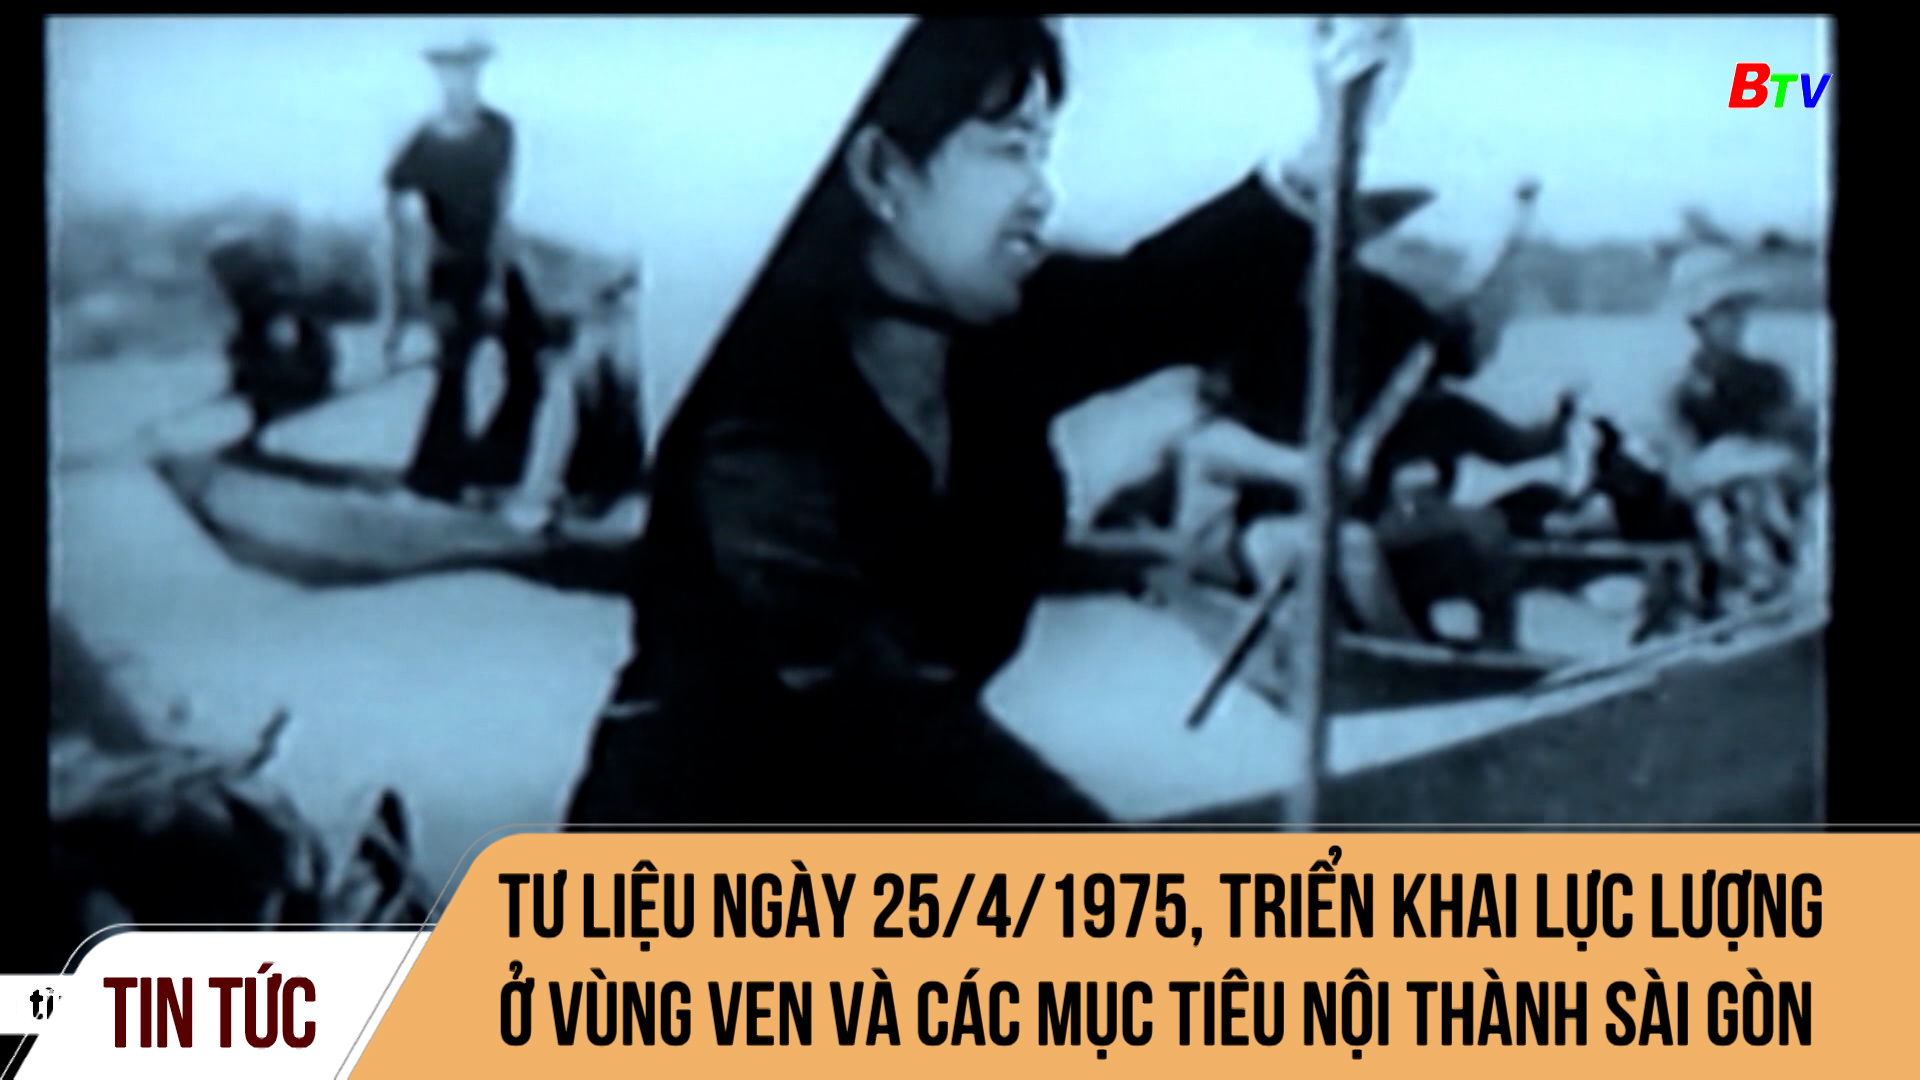 Tư liệu ngày 25/4/1975, triển khai lực lượng ở vùng ven và các mục tiêu nội thành Sài Gòn